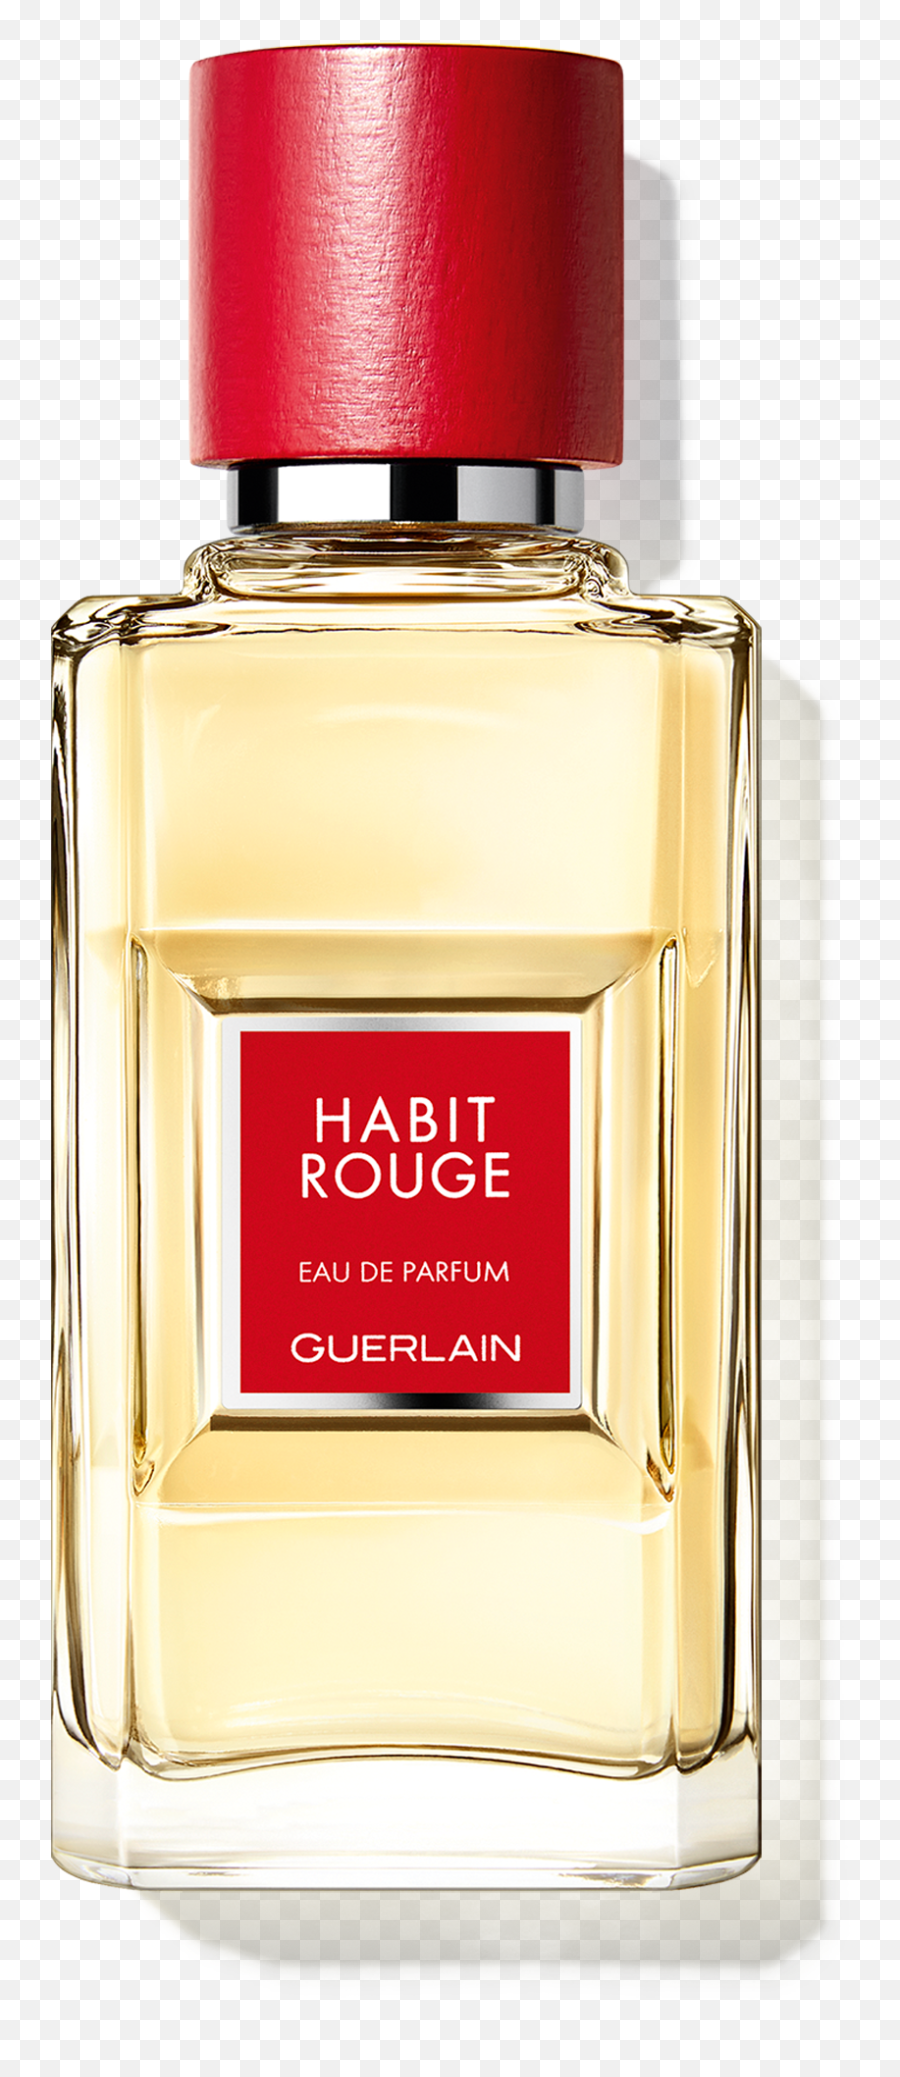 Habit Rouge Eau De Parfum Guerlain - Guerlain Rouge Perfume Emoji,Emotion Bottles Perfume